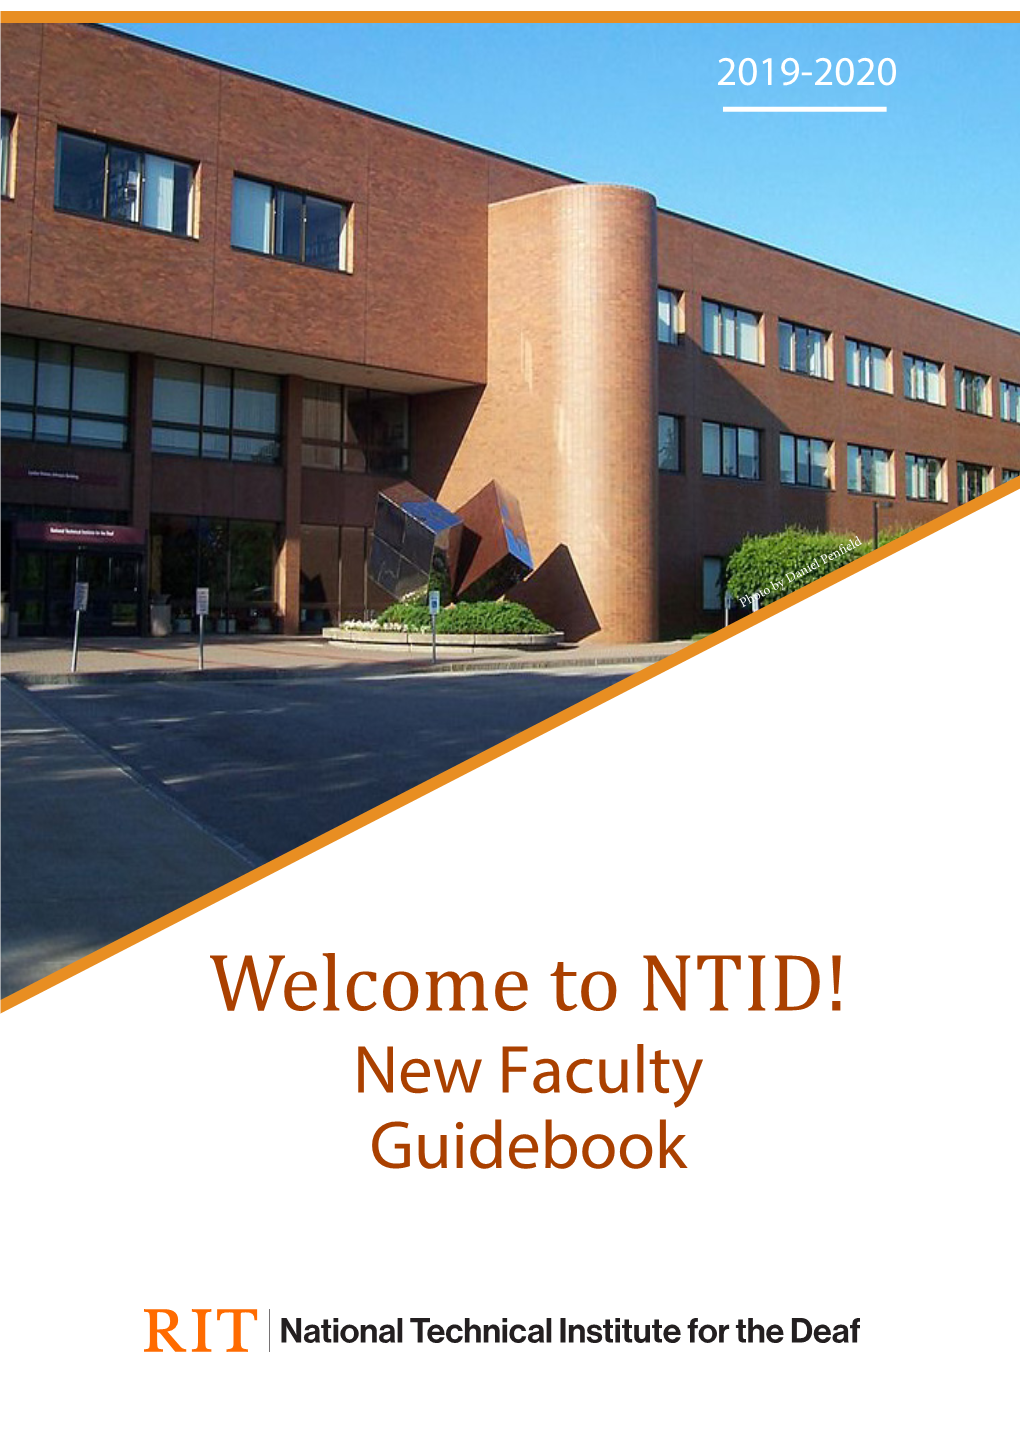 NTID! New Faculty Guidebook NTID New Faculty Guidebook 2019